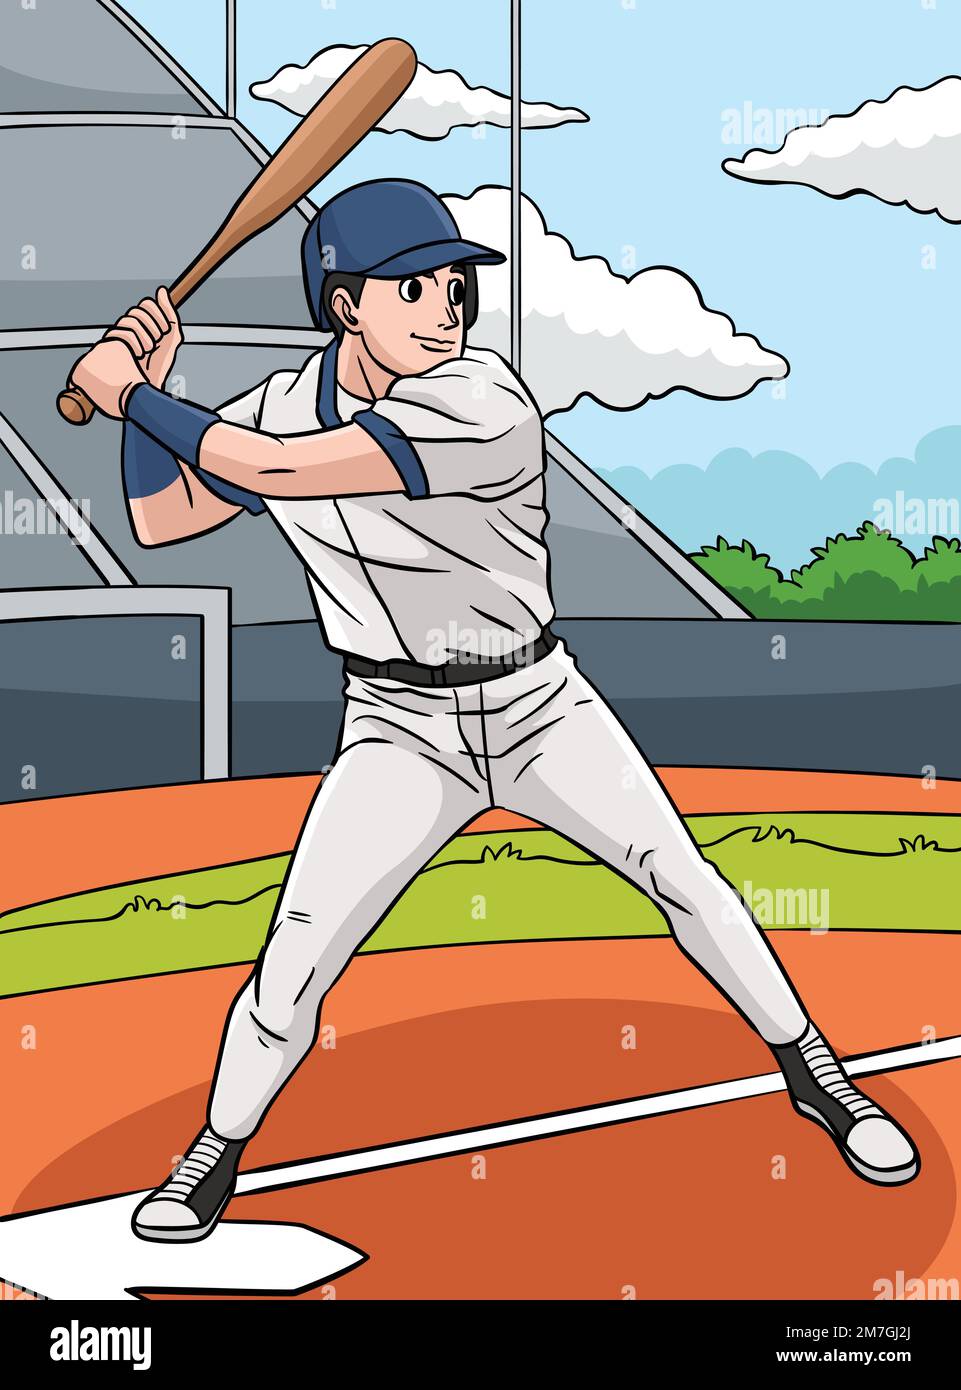 Baseball Players Cartoon Images – Browse 40,484 Stock Photos